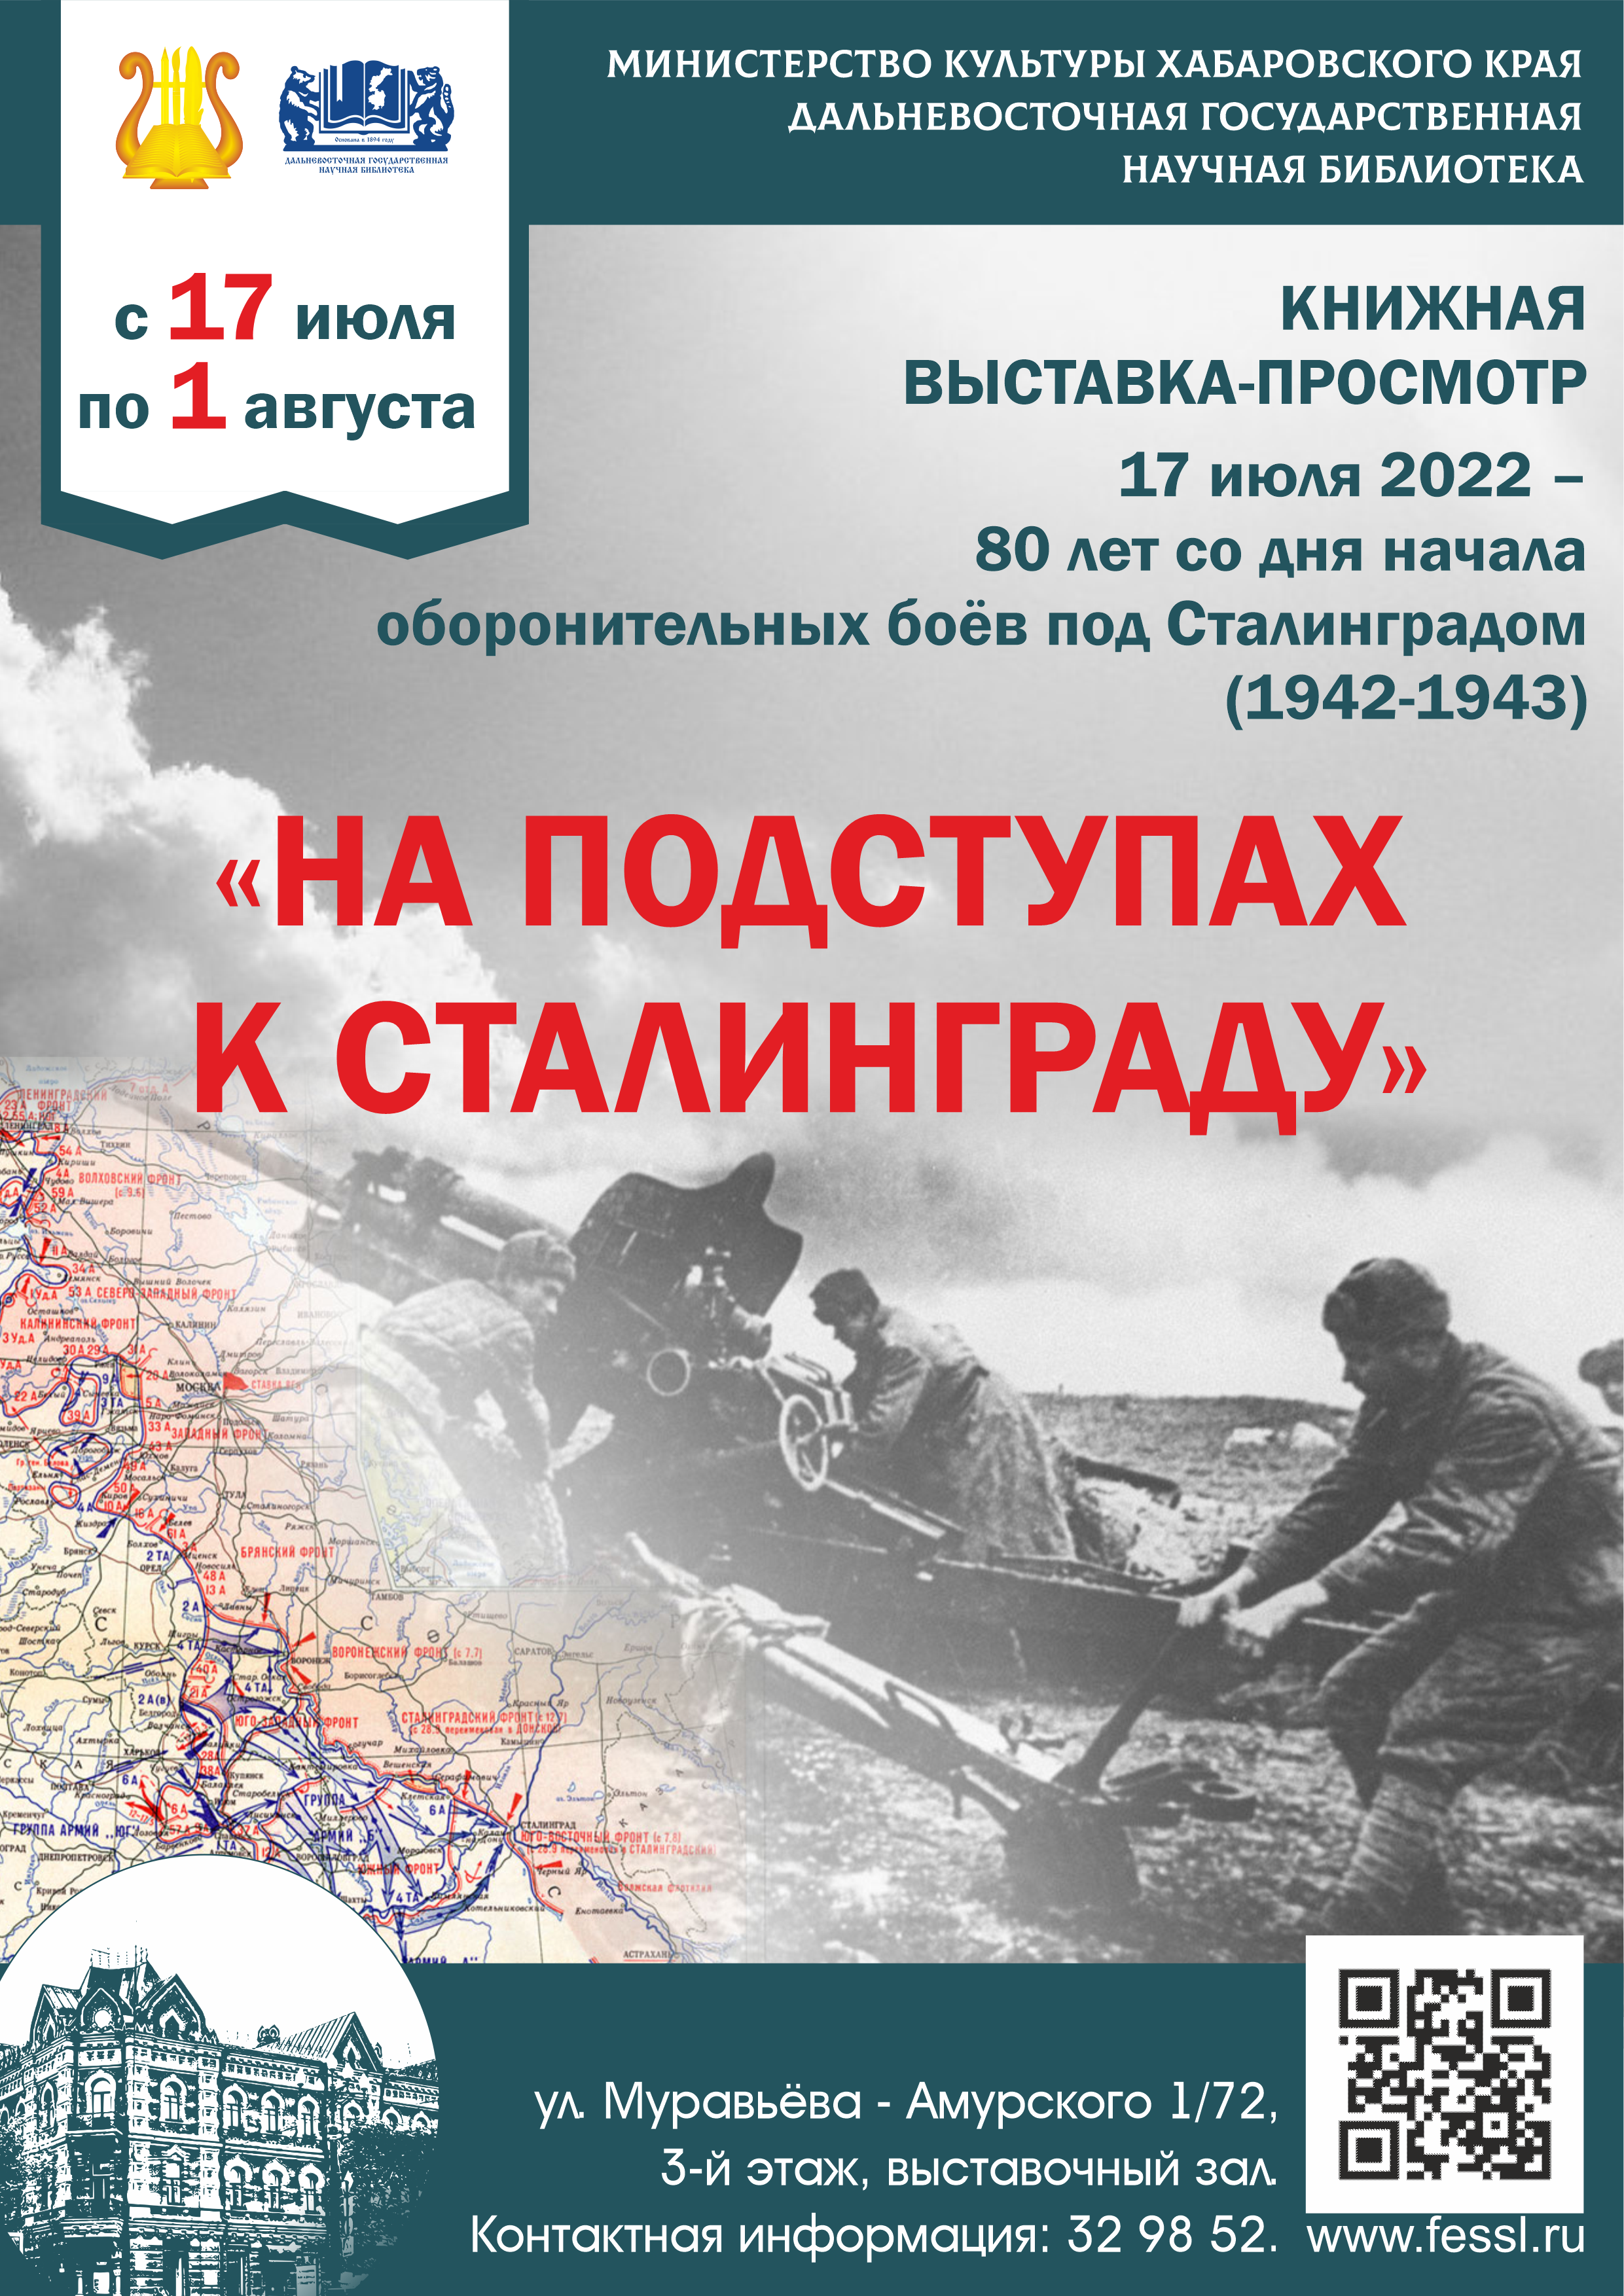 Библиотека приглашает посетить книжную выставку «На подступах к Сталинграду».